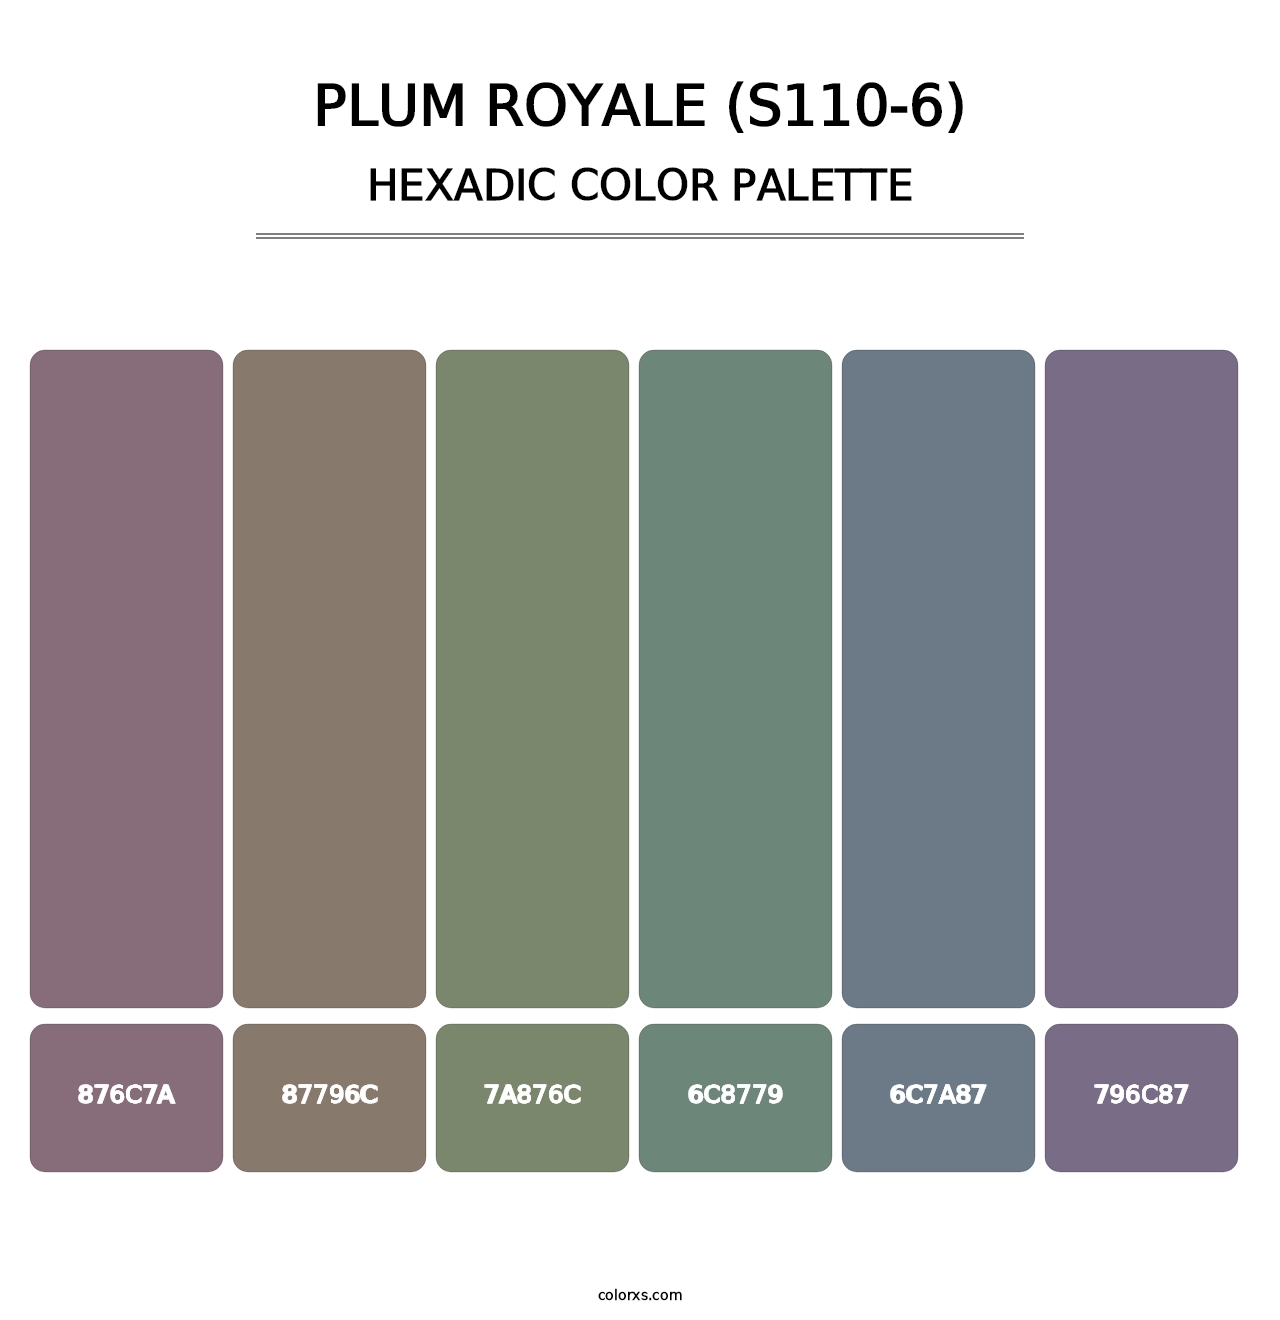 Plum Royale (S110-6) - Hexadic Color Palette